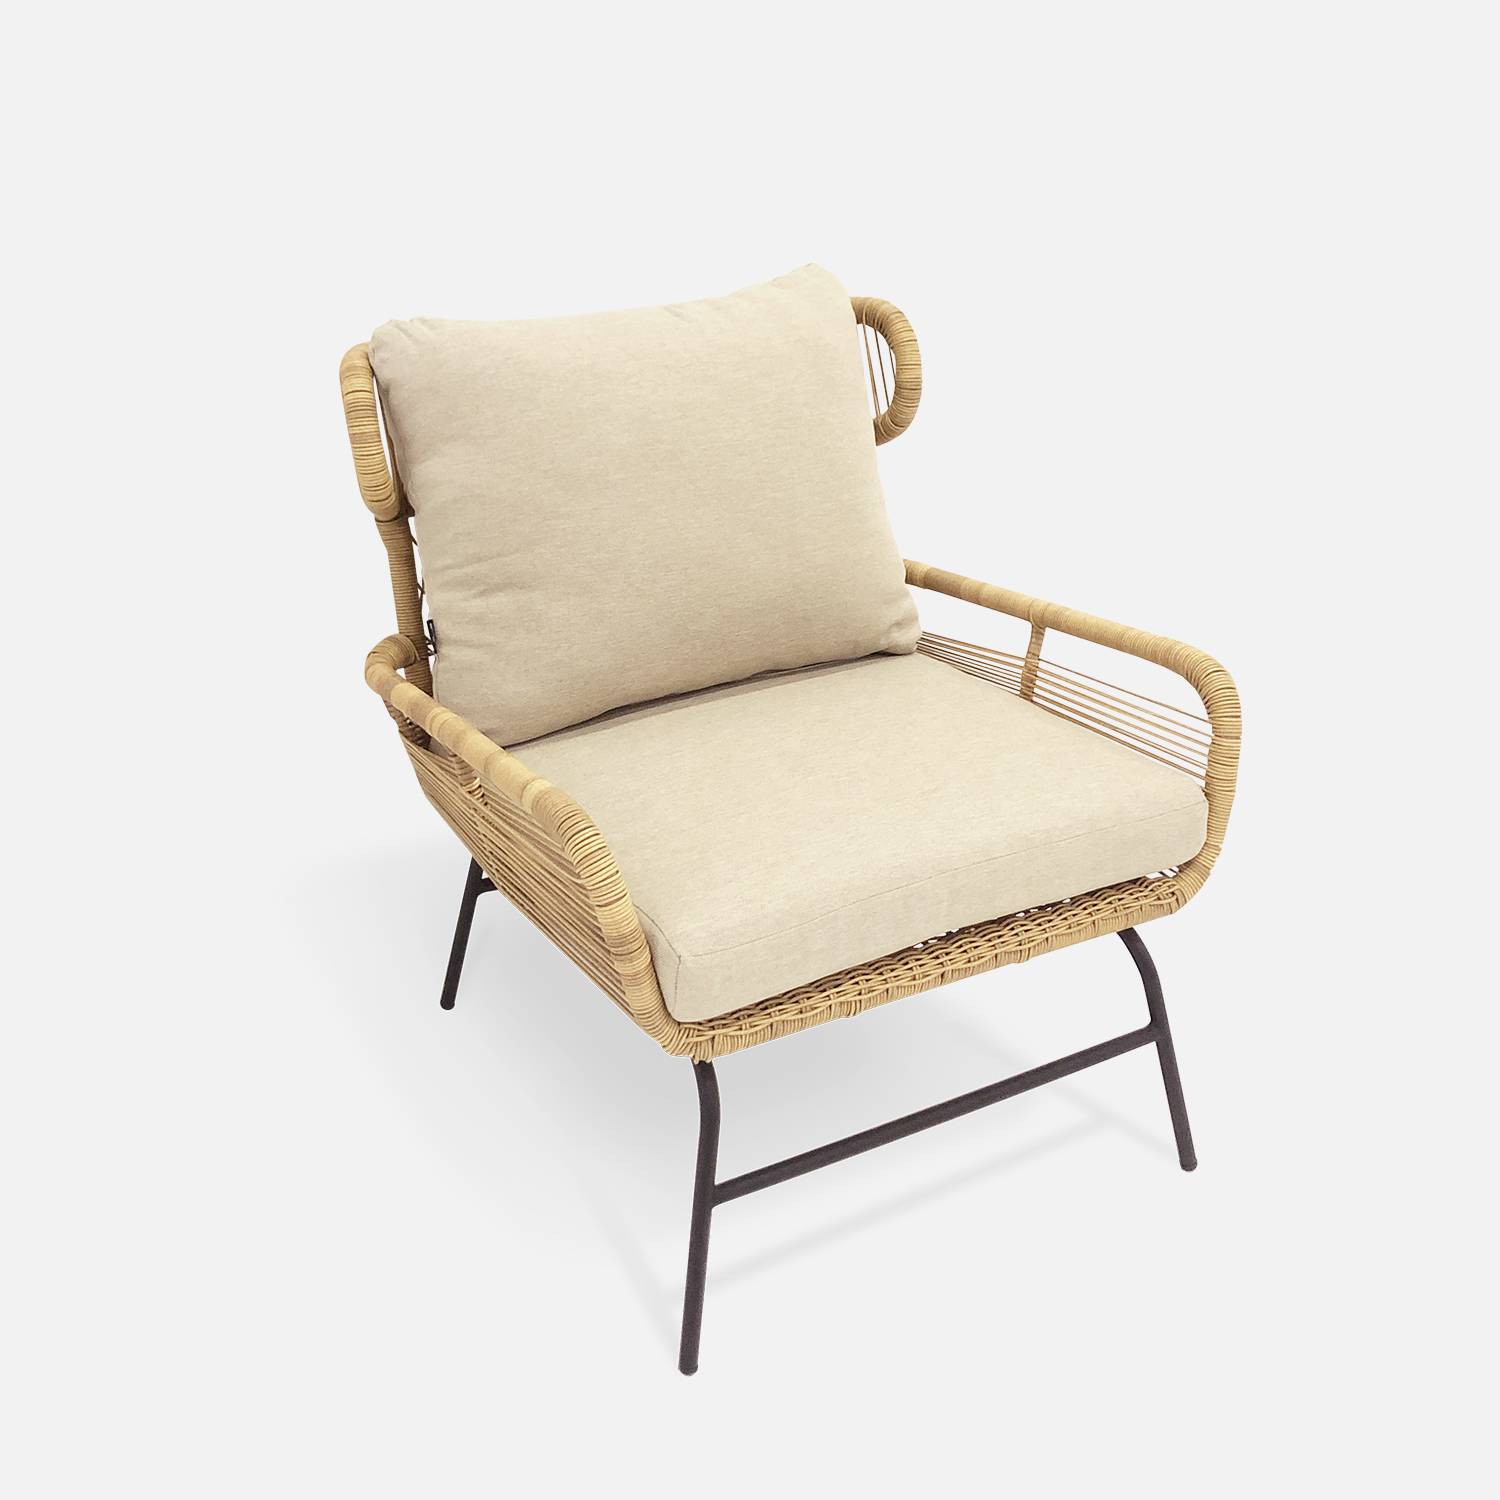 BALI 4-zits loungeset - 2-zits bankstel en 2 fauteuils met 1 bijzettafel, geweven rotan-effect wicker, beige kussens Photo4